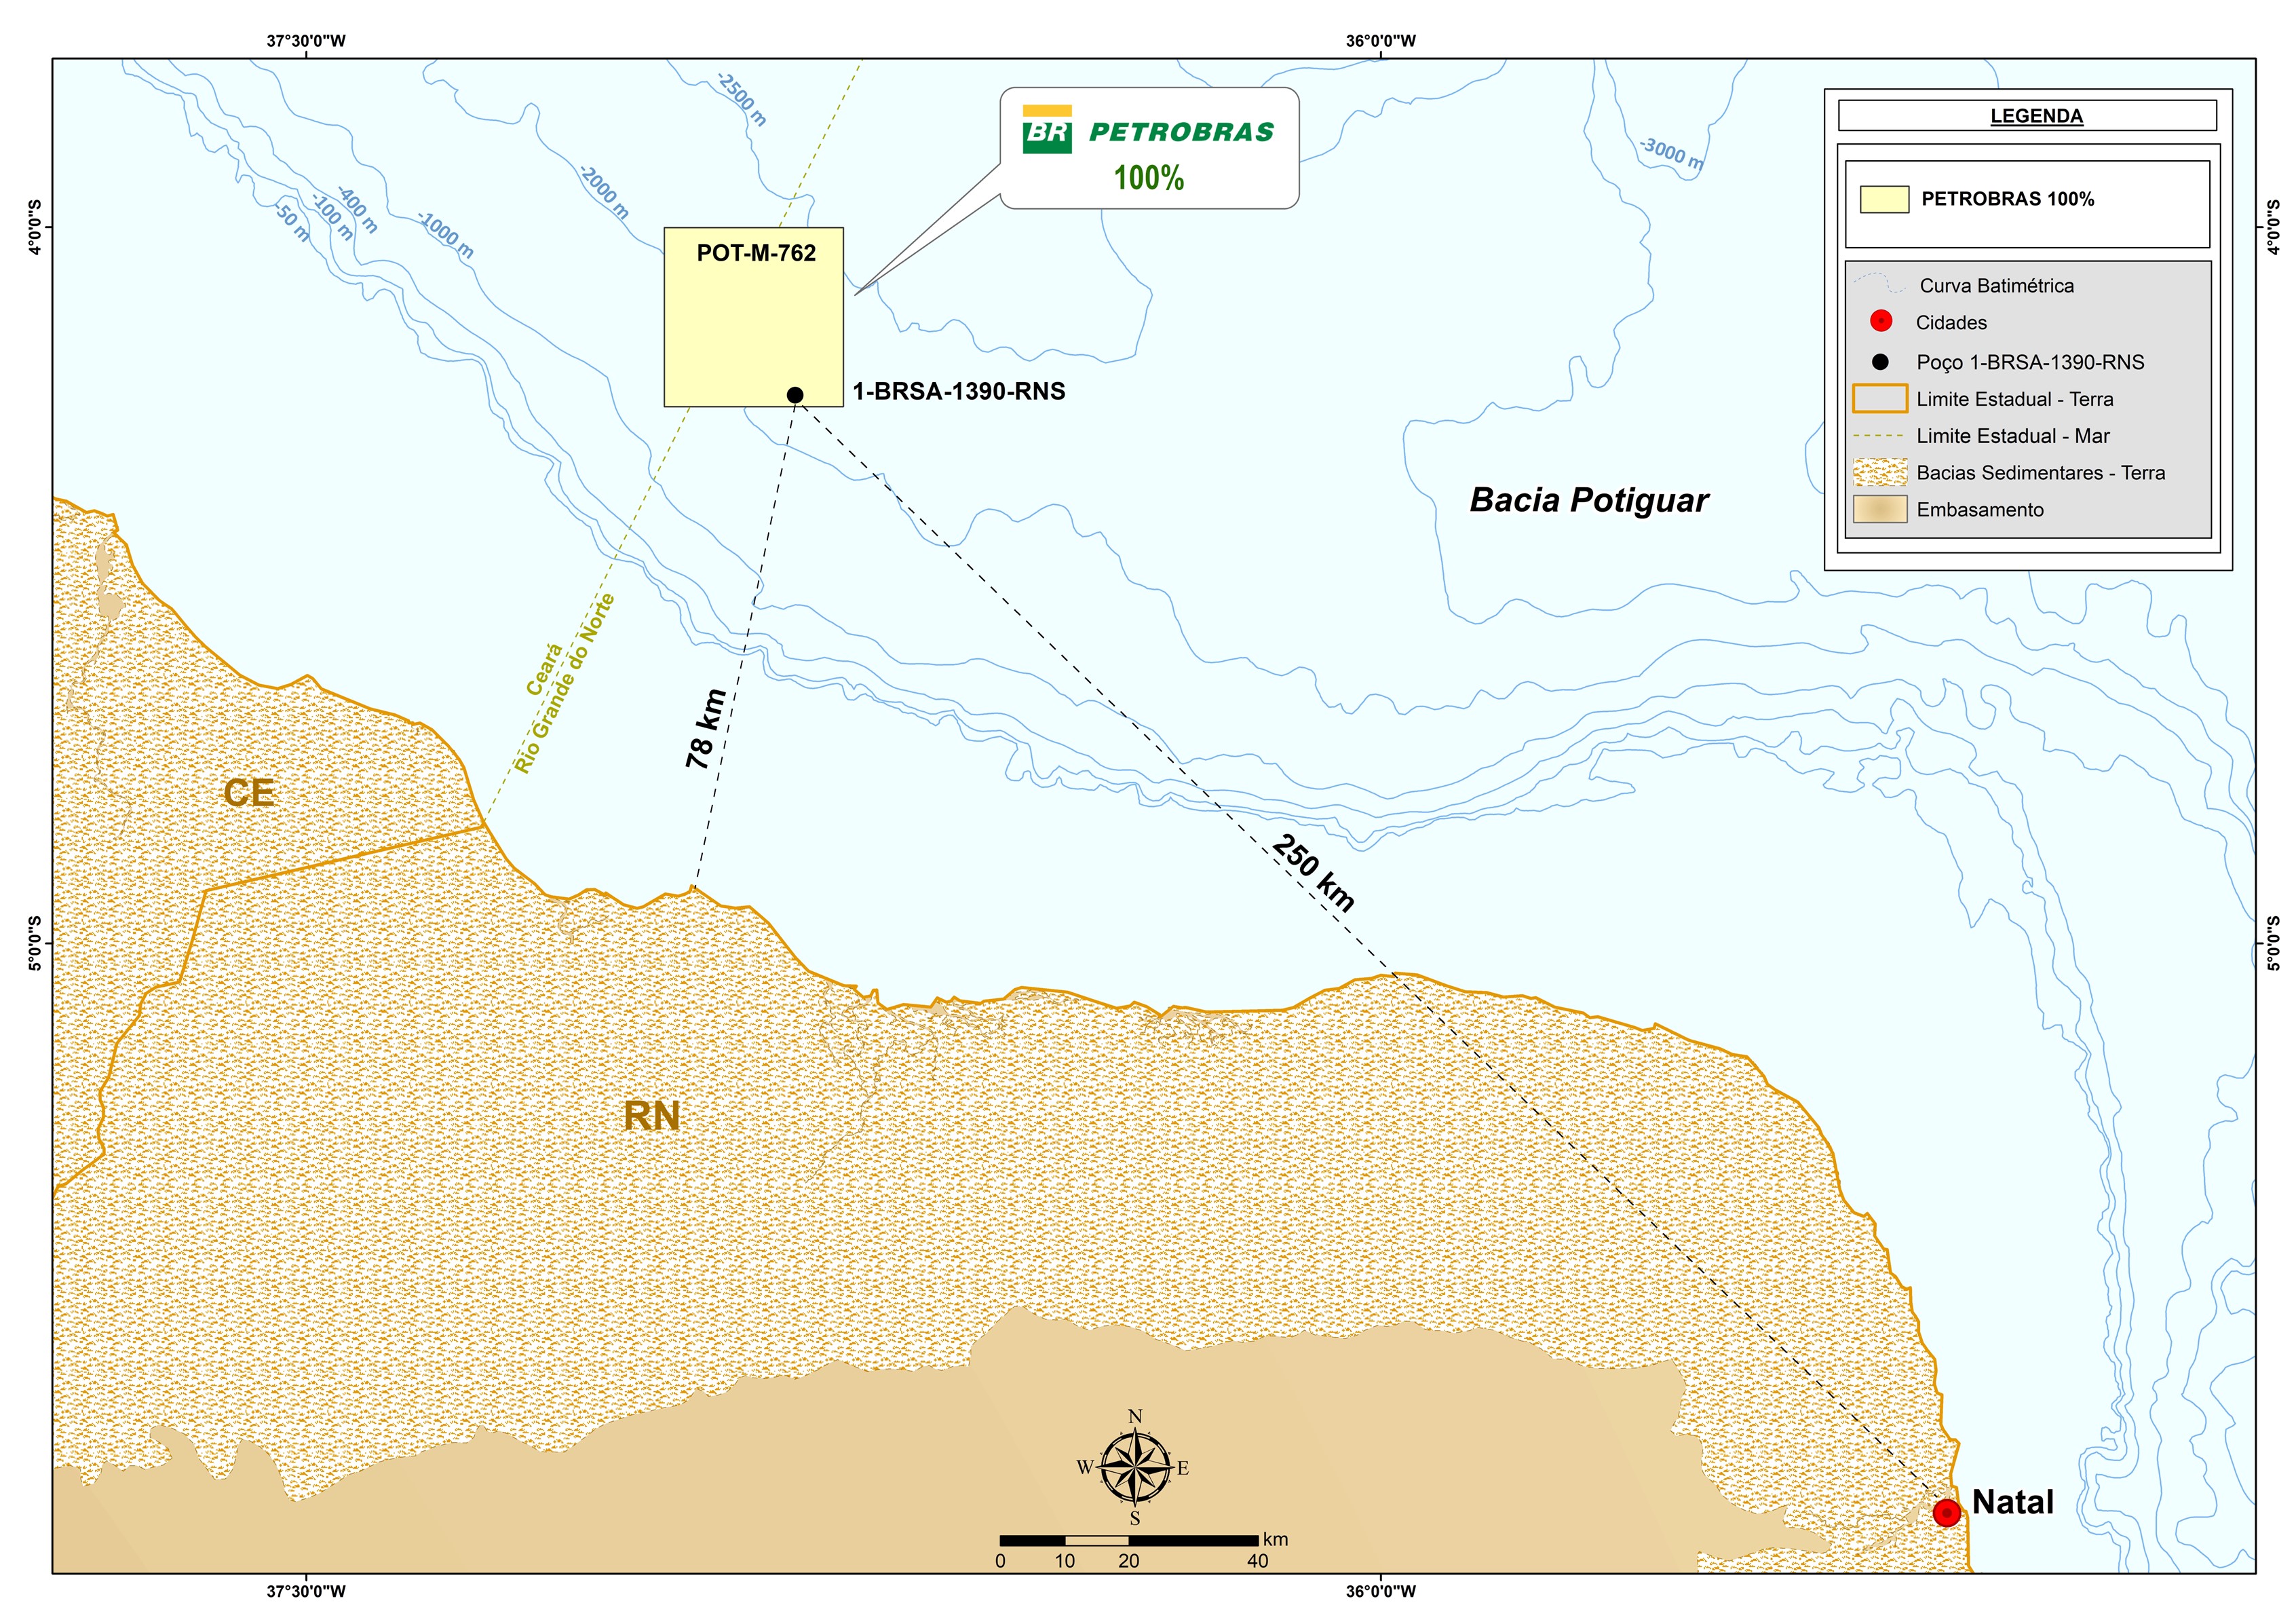 Petrobras descobre petróleo em águas ultraprofundas da Bacia Potiguar mapa descoberta bacia potiguar jpg